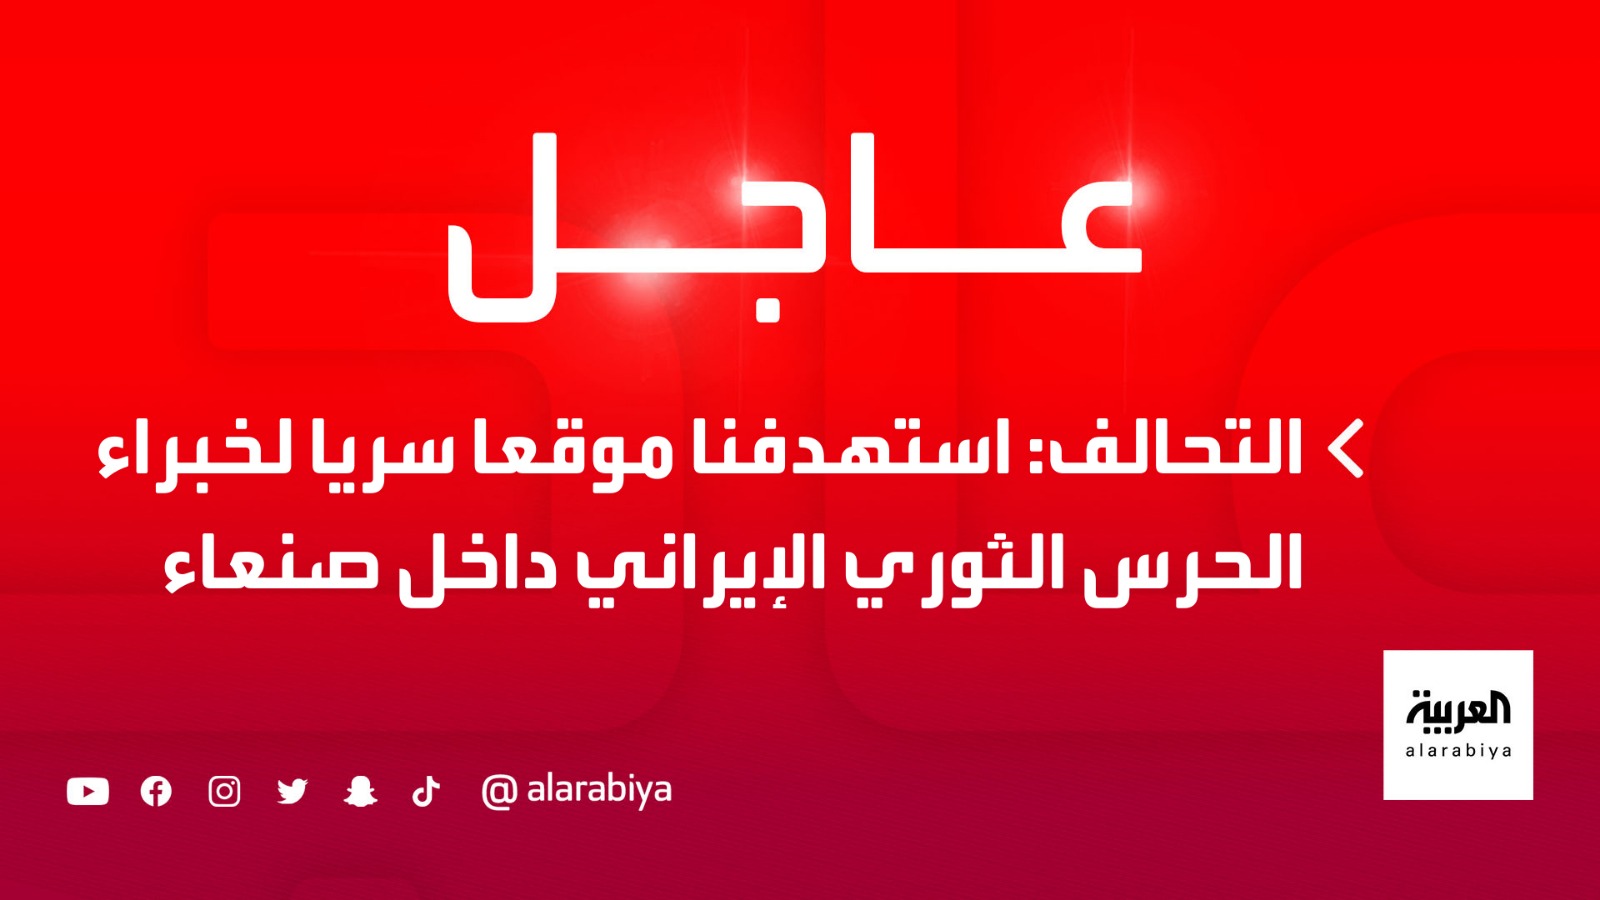 اة العربية |  # التحالف: استهدفنا موقعا سريا لخبراء الحرس الثوري الإيراني داخل # صنعاء